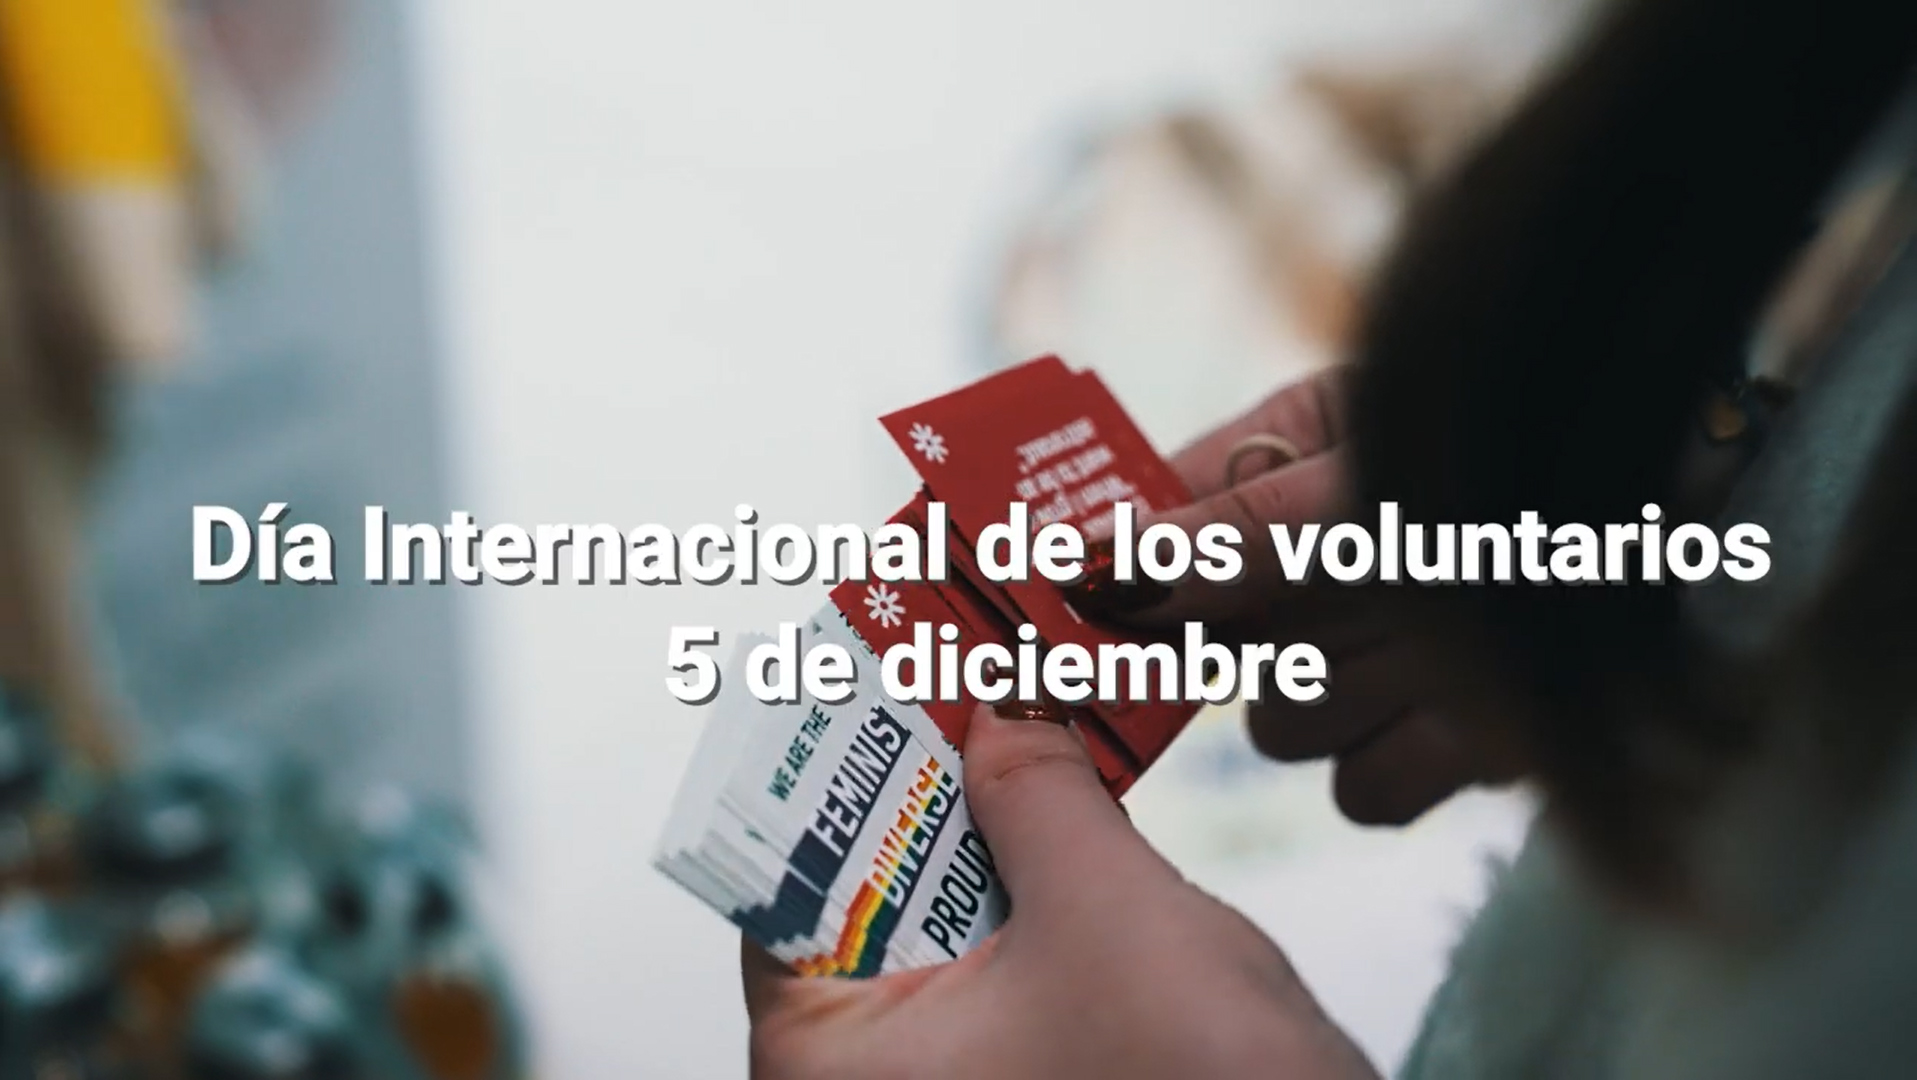 Día Internacional de los voluntarios - 5 de diciembre